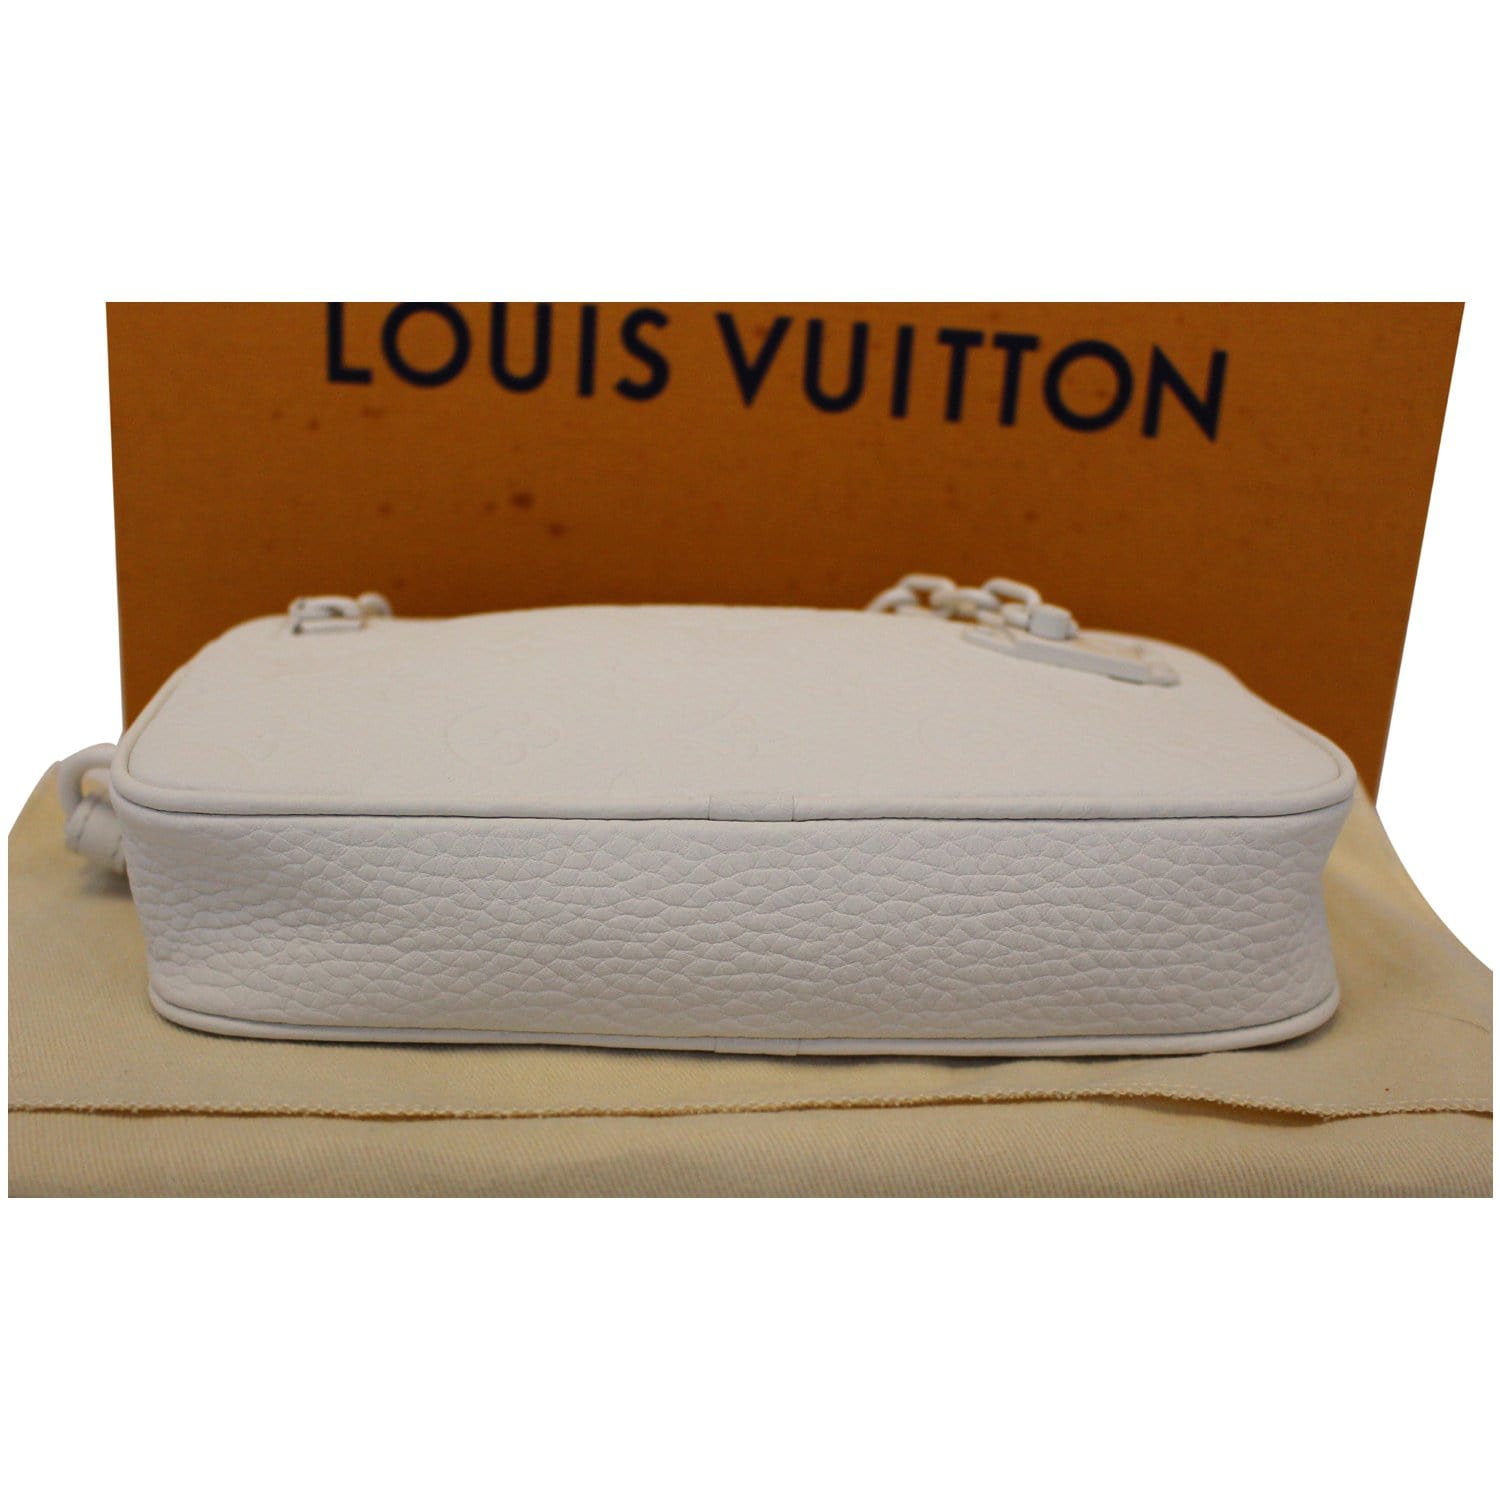 What fits LV clear clutch bag 🤔 Louis Vuitton plastic bag, LV